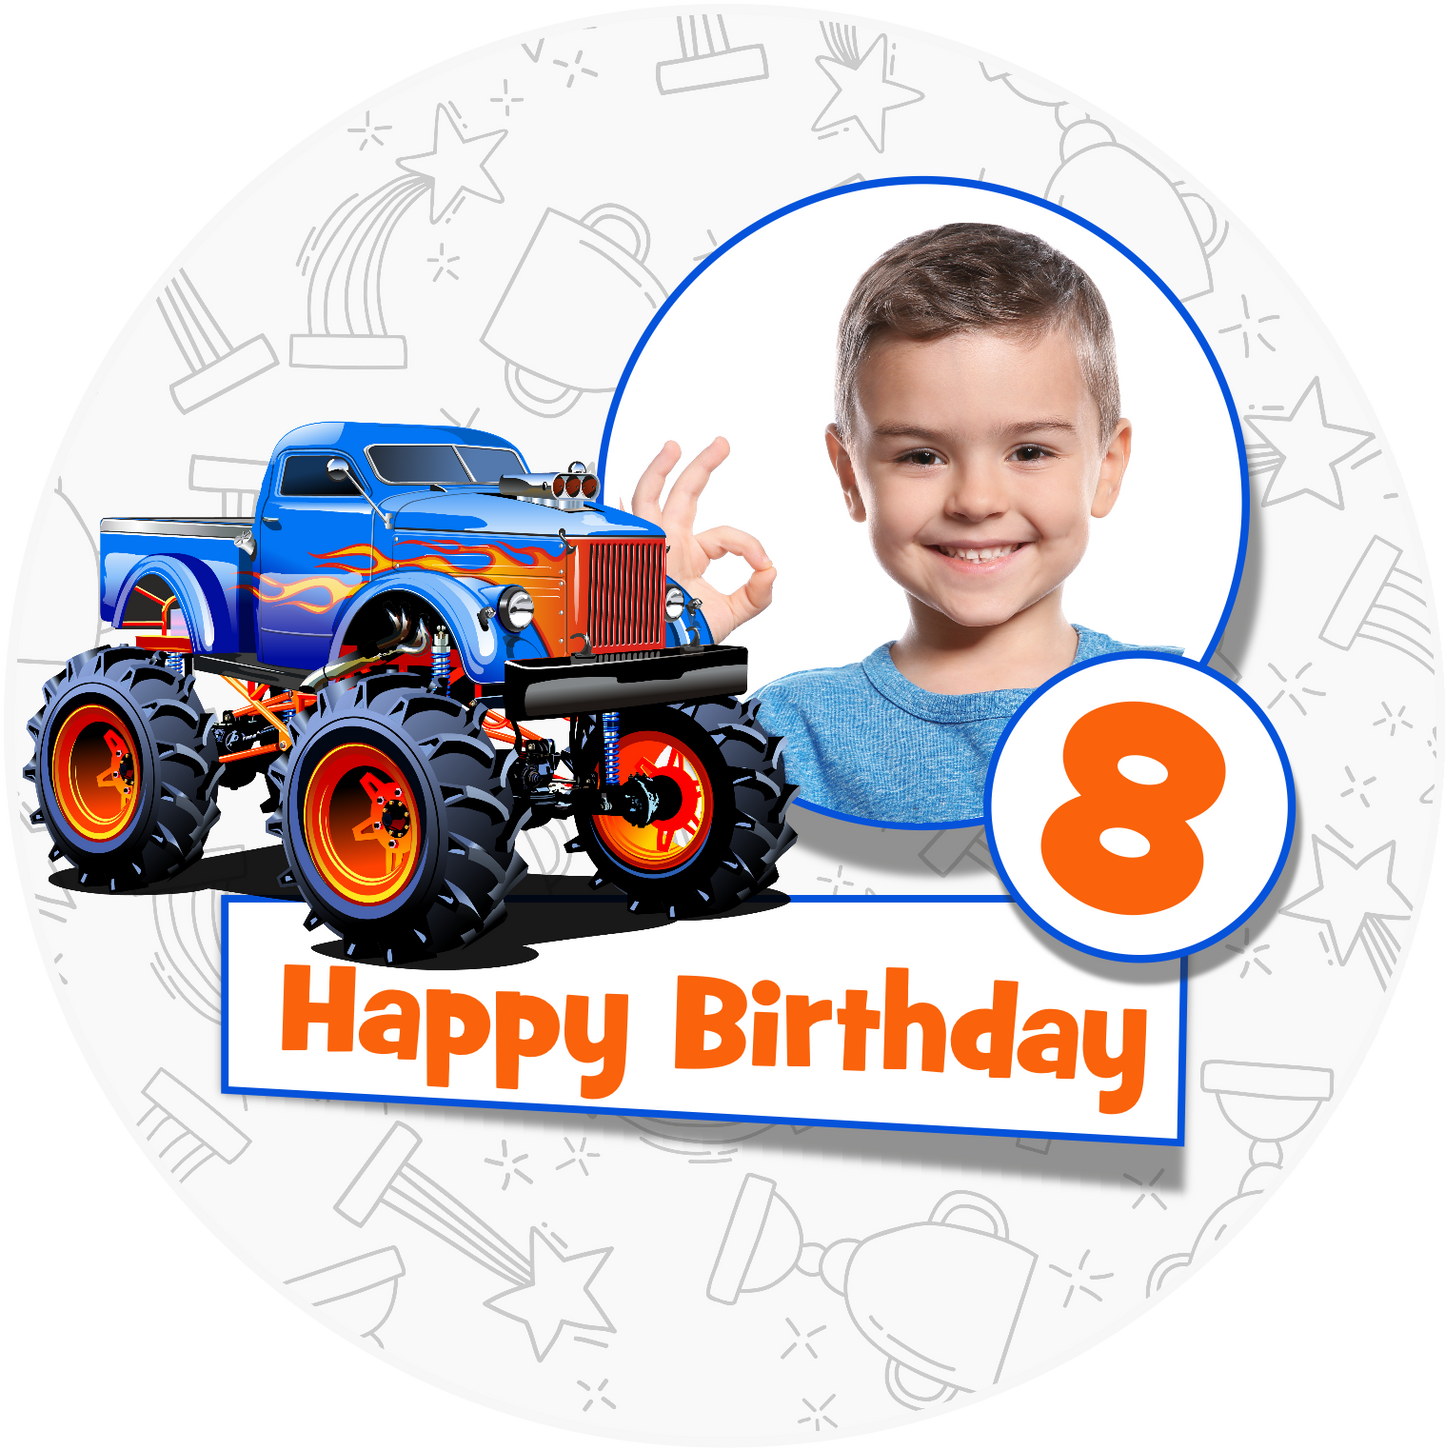 Happy Birthday Monster Truck Cake Topper